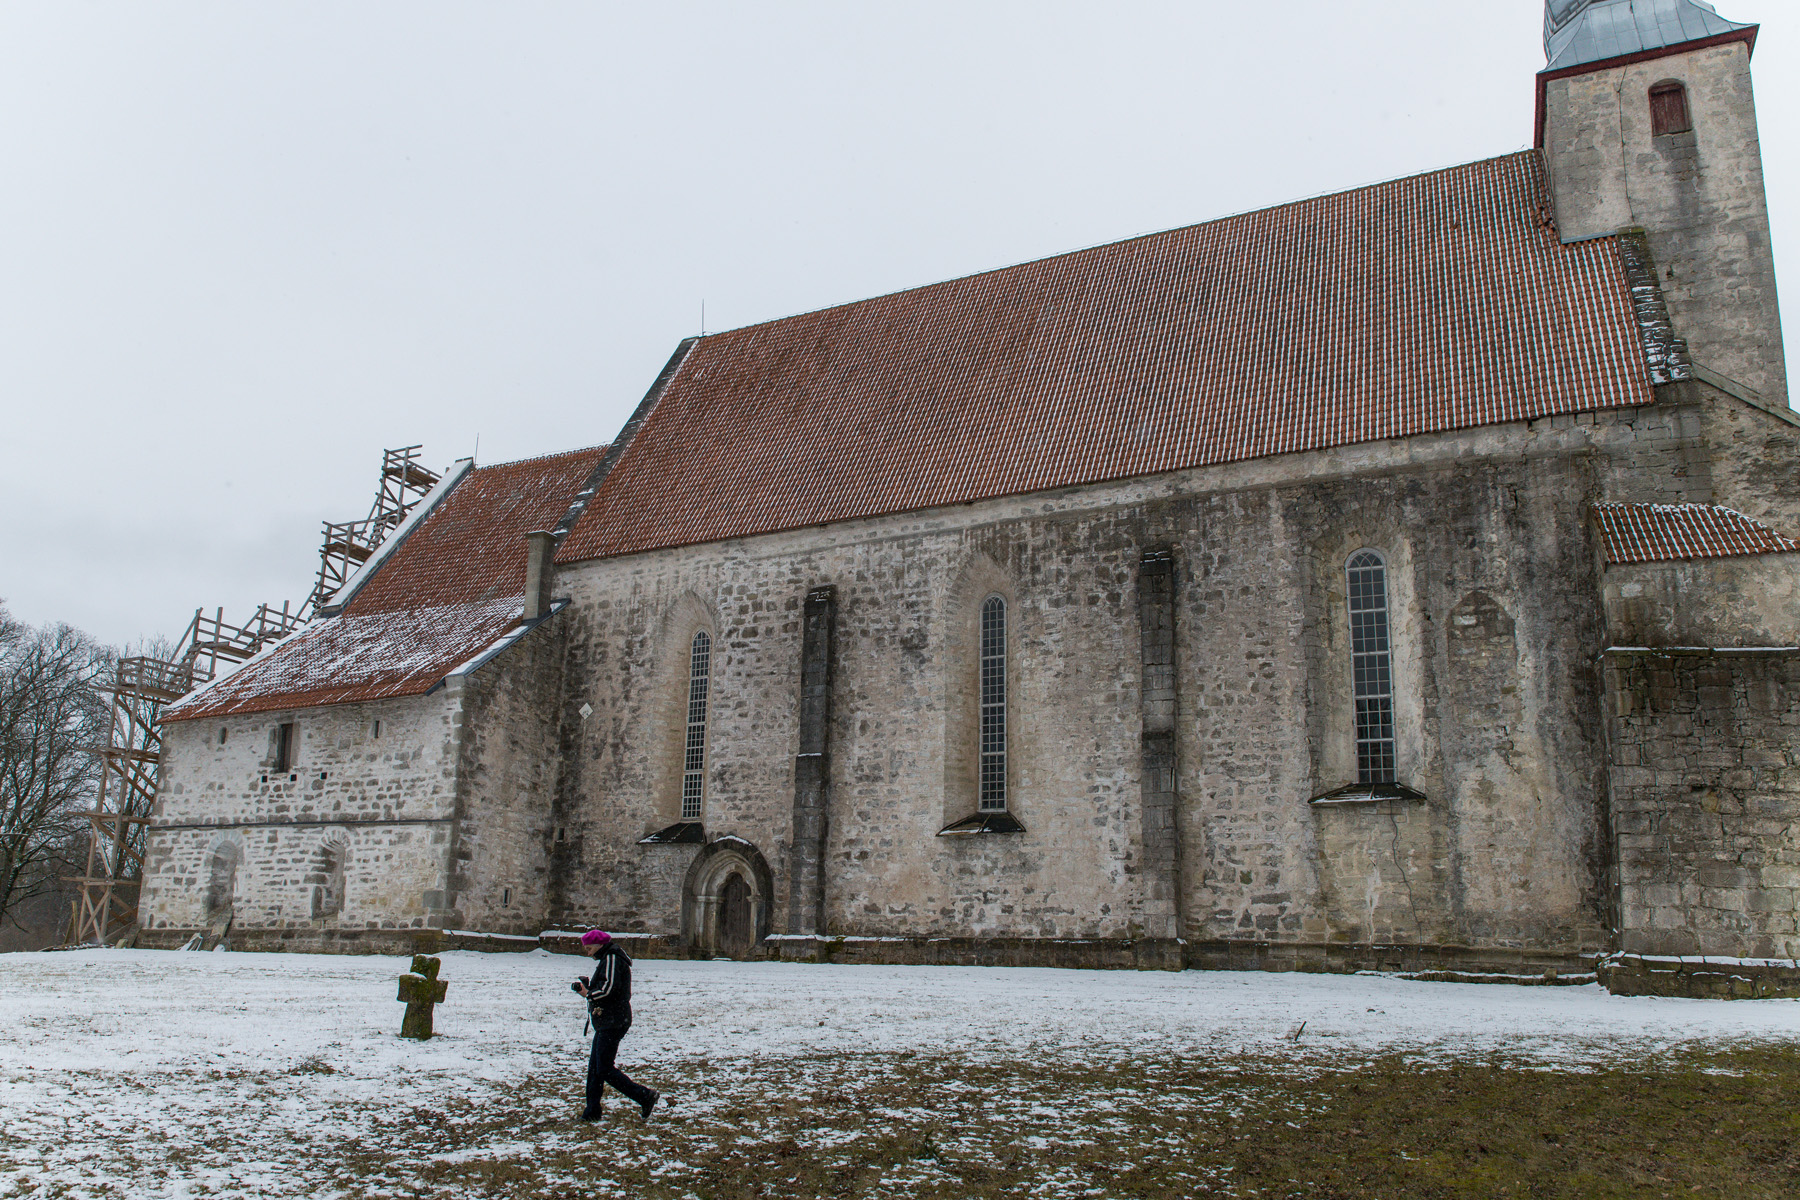 20160319-Saaremaa-400-Kaarma.jpg - 18.-20. märts 2016. Saaremaa ringreis. Kaarma kirik